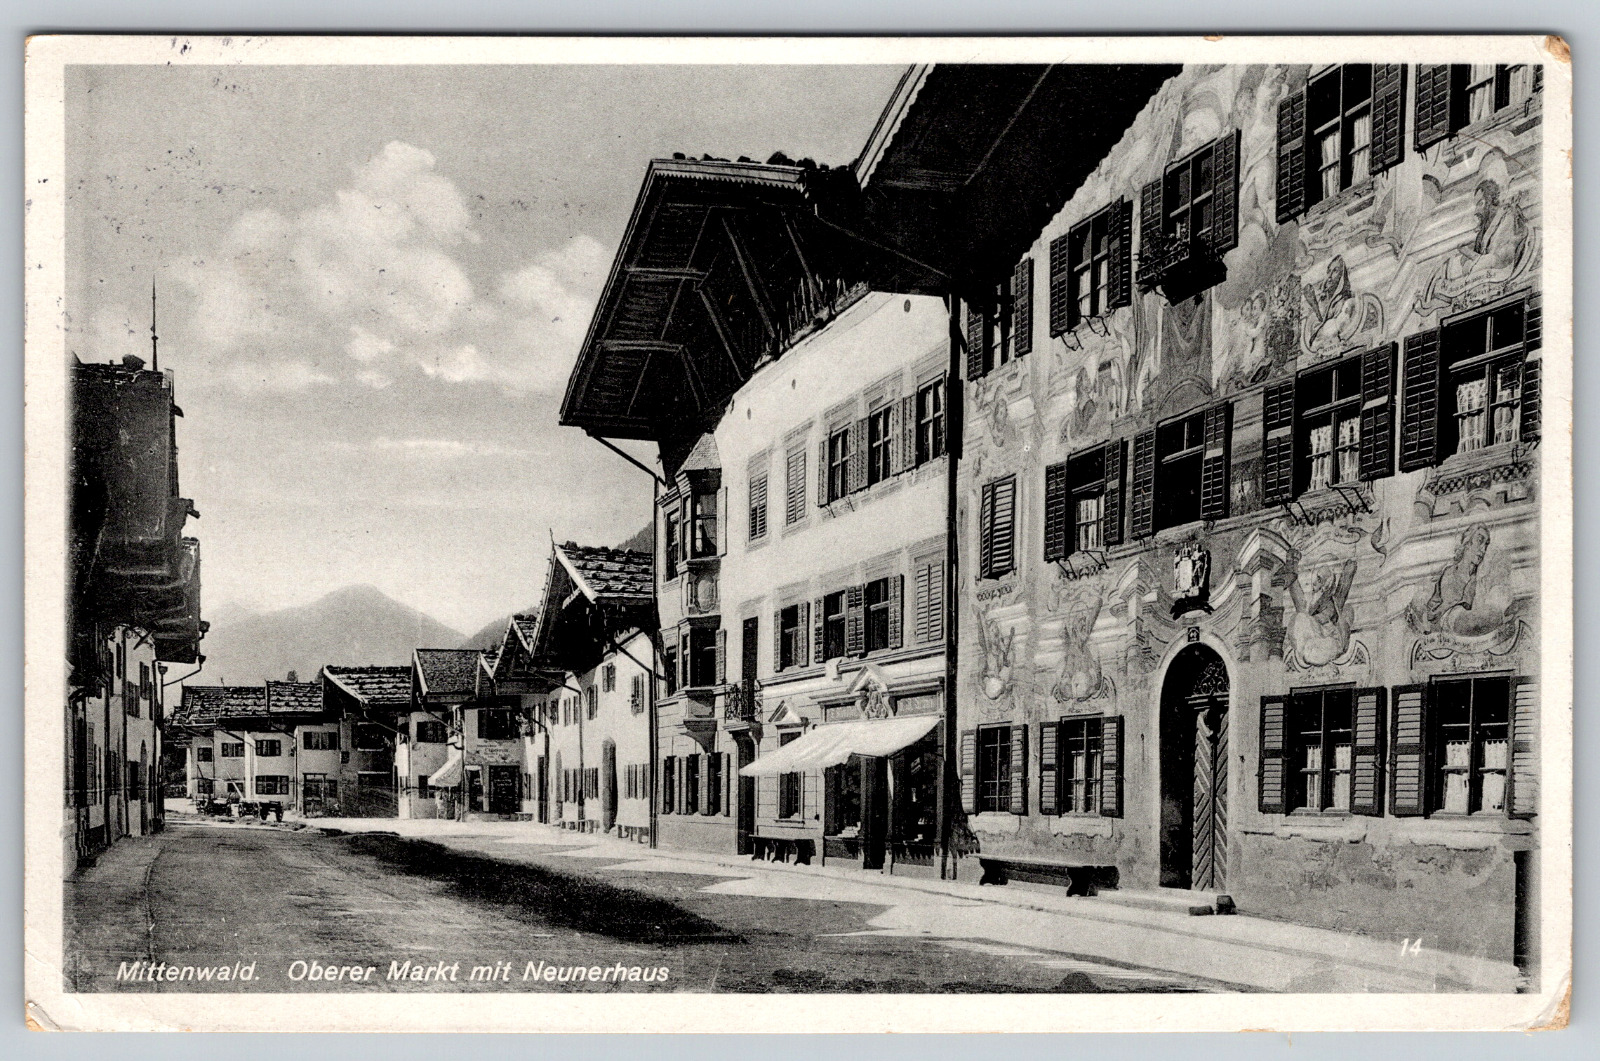 Mittenwald. Oberer Markt with Neunerhaus c1930s Oberammergau Vintage Postcard